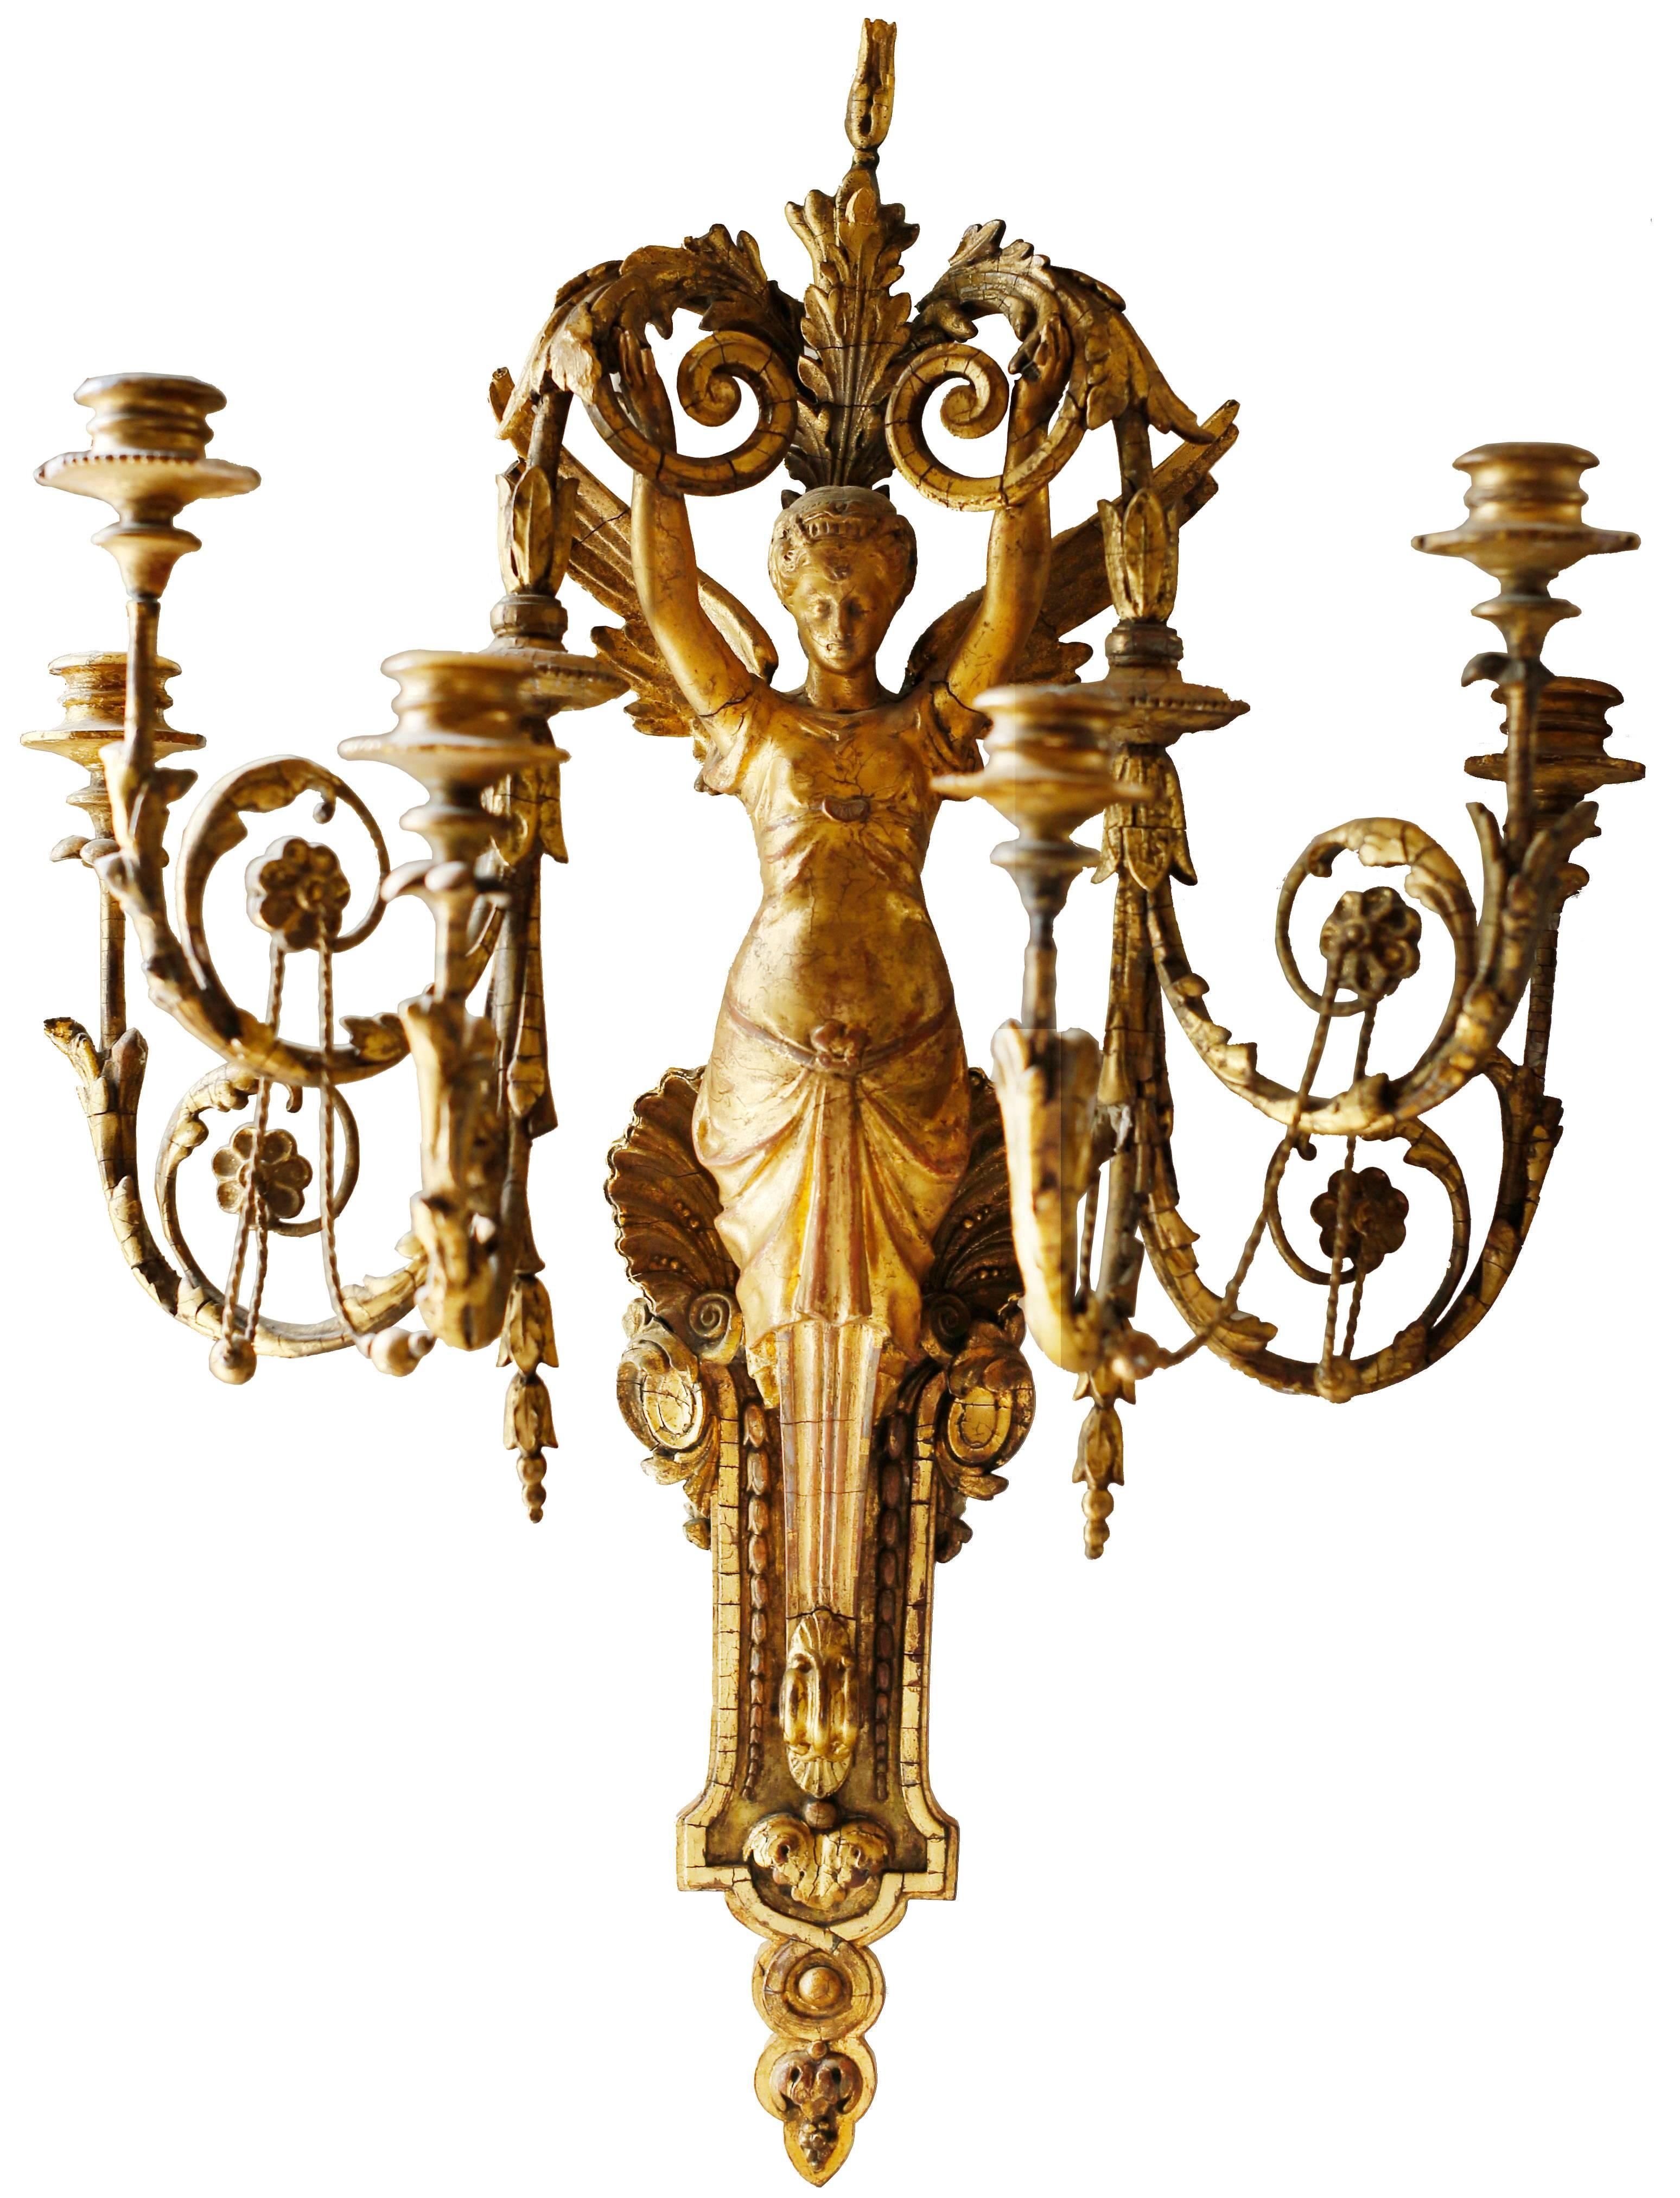 Ein exquisites Paar vergoldeter Wandleuchter mit sechs Lampen. Die Leuchte wird von der Figur eines geflügelten Seraphim getragen, dessen drapierte untere Hälfte in einen profilierten Bügel und einen Akanthus-Anhänger übergeht. Die obere Hälfte des